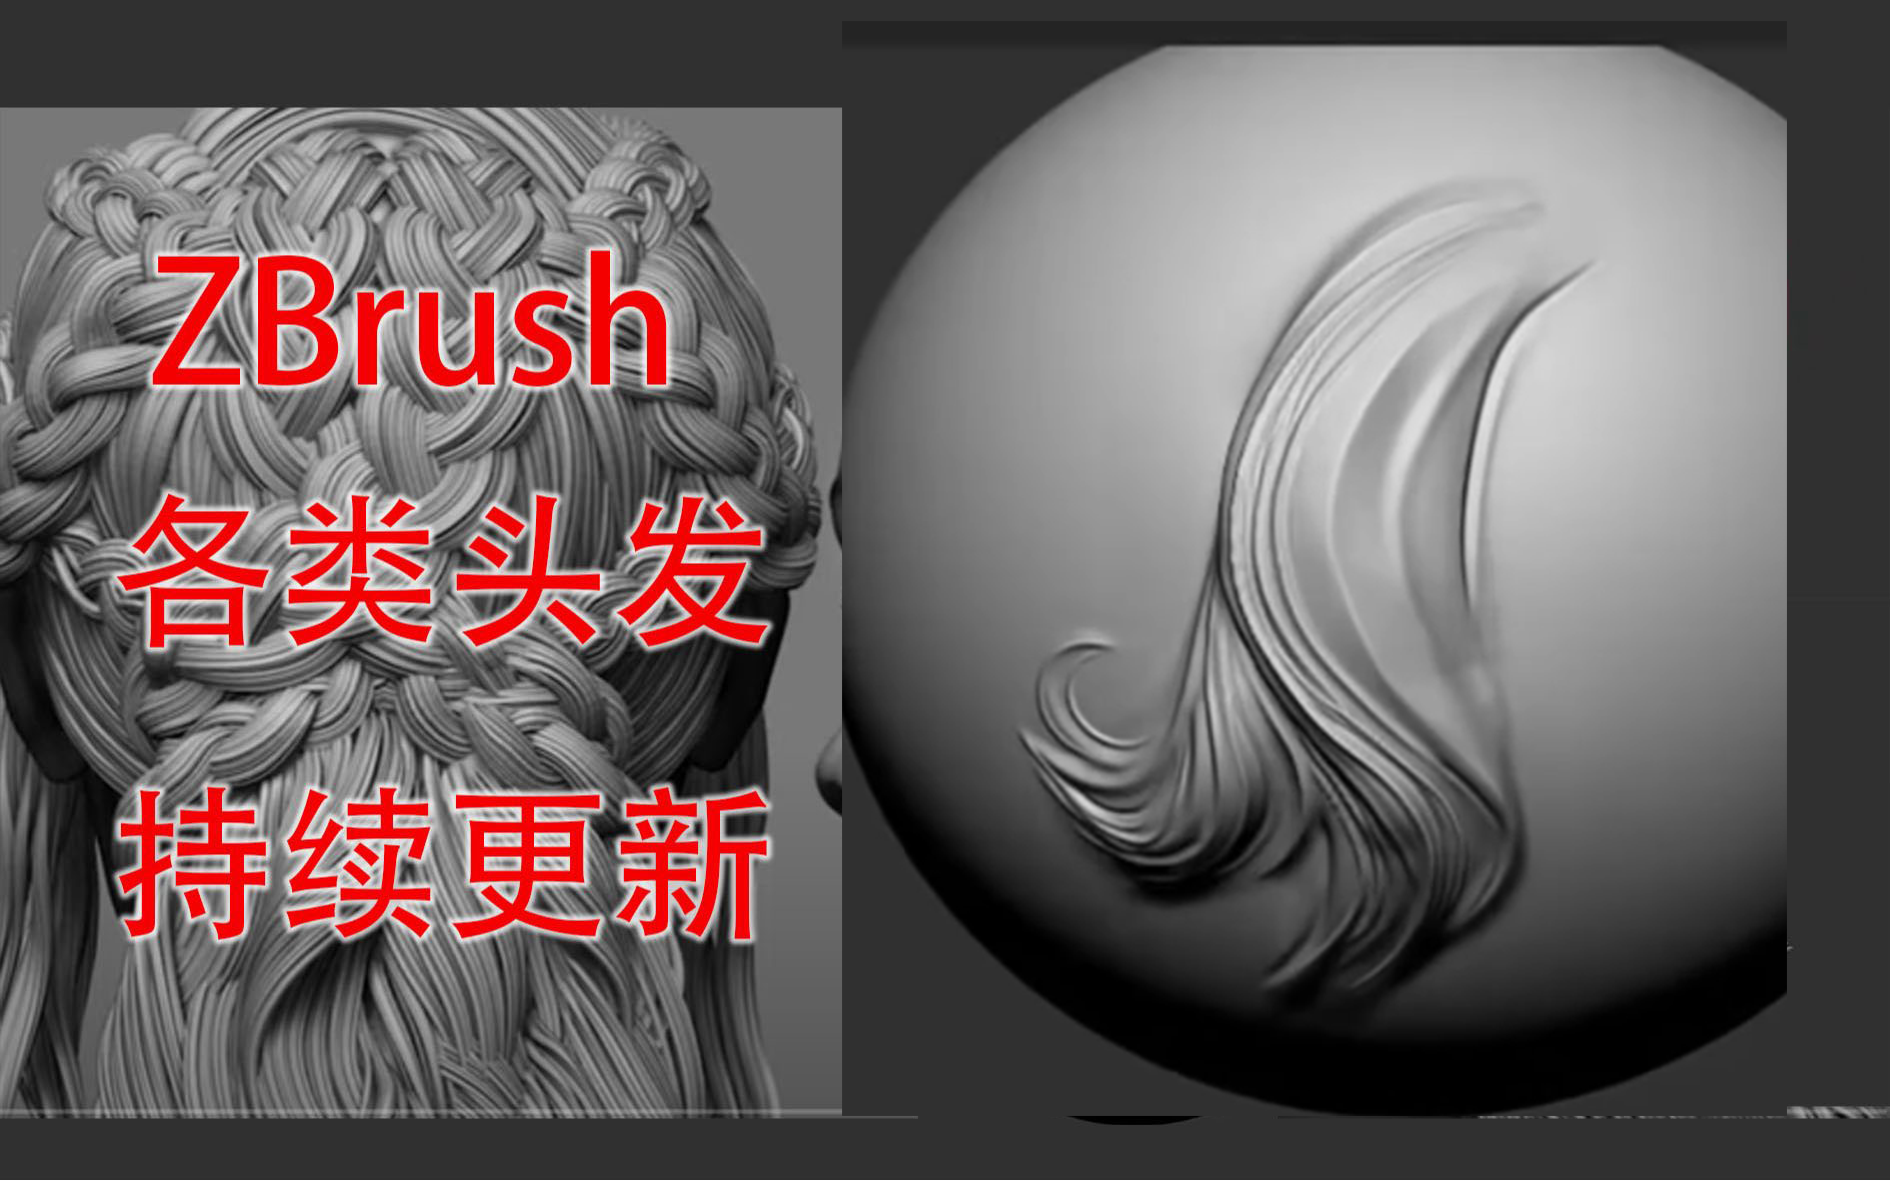 【ZBrush雕刻】卡通风格角色雕刻|头发雕刻技巧|掌握五官比例讲解！ - 哔哩哔哩